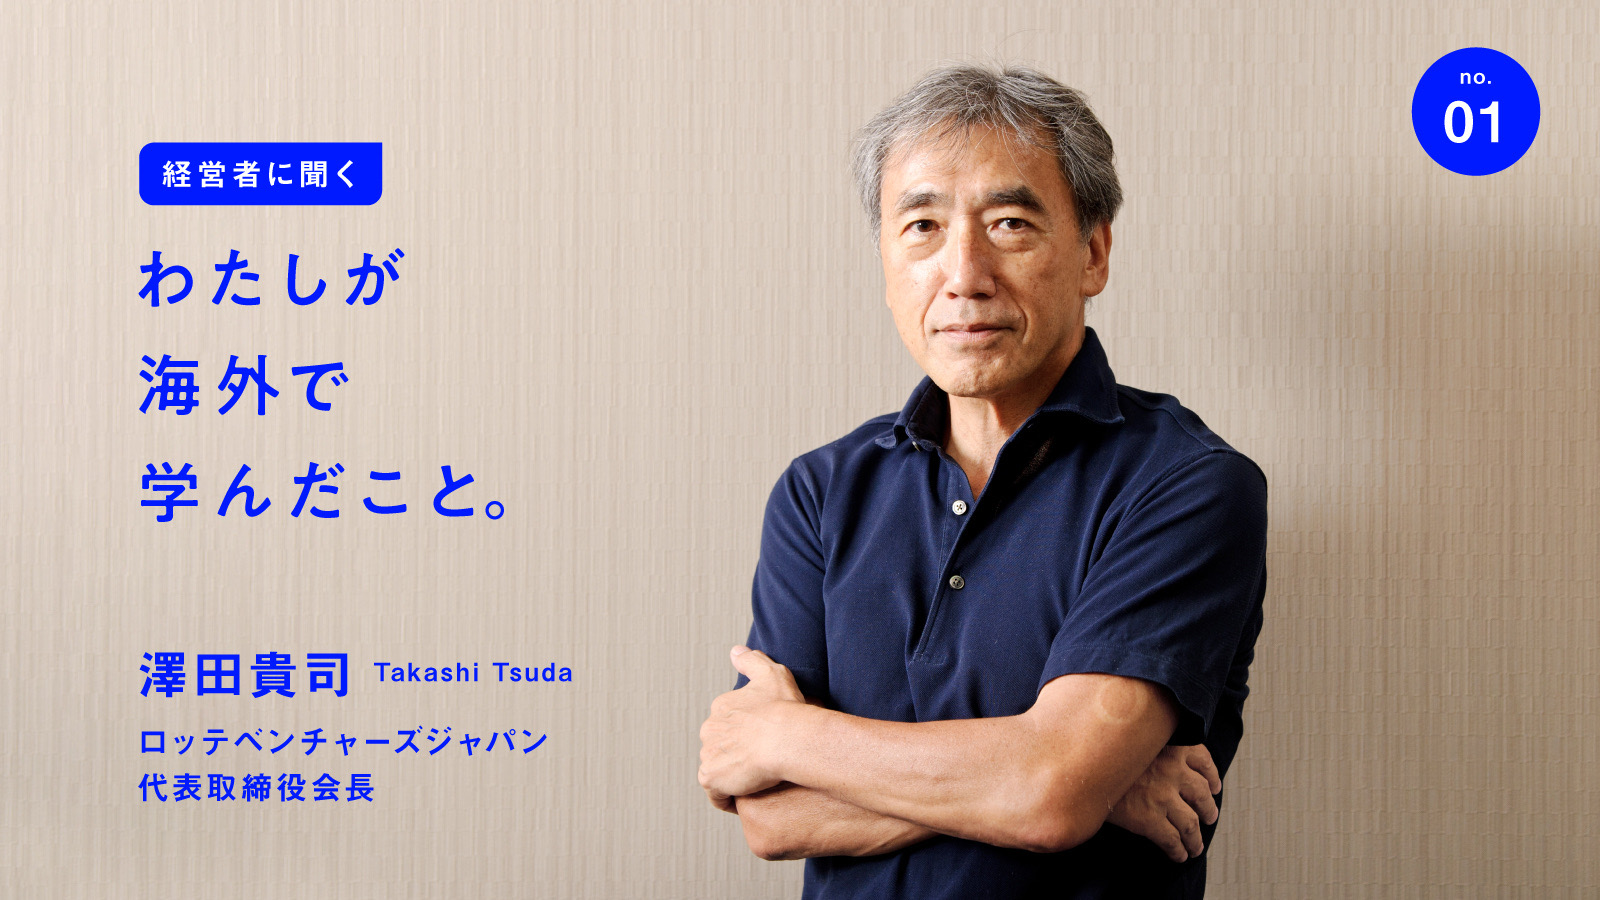 澤田貴司が若手時代を振り返る「日米の企業を見て知った、日本式の経営のすごさ」 | 日本の名経営者に聞く「わたしが海外で学んだこと」